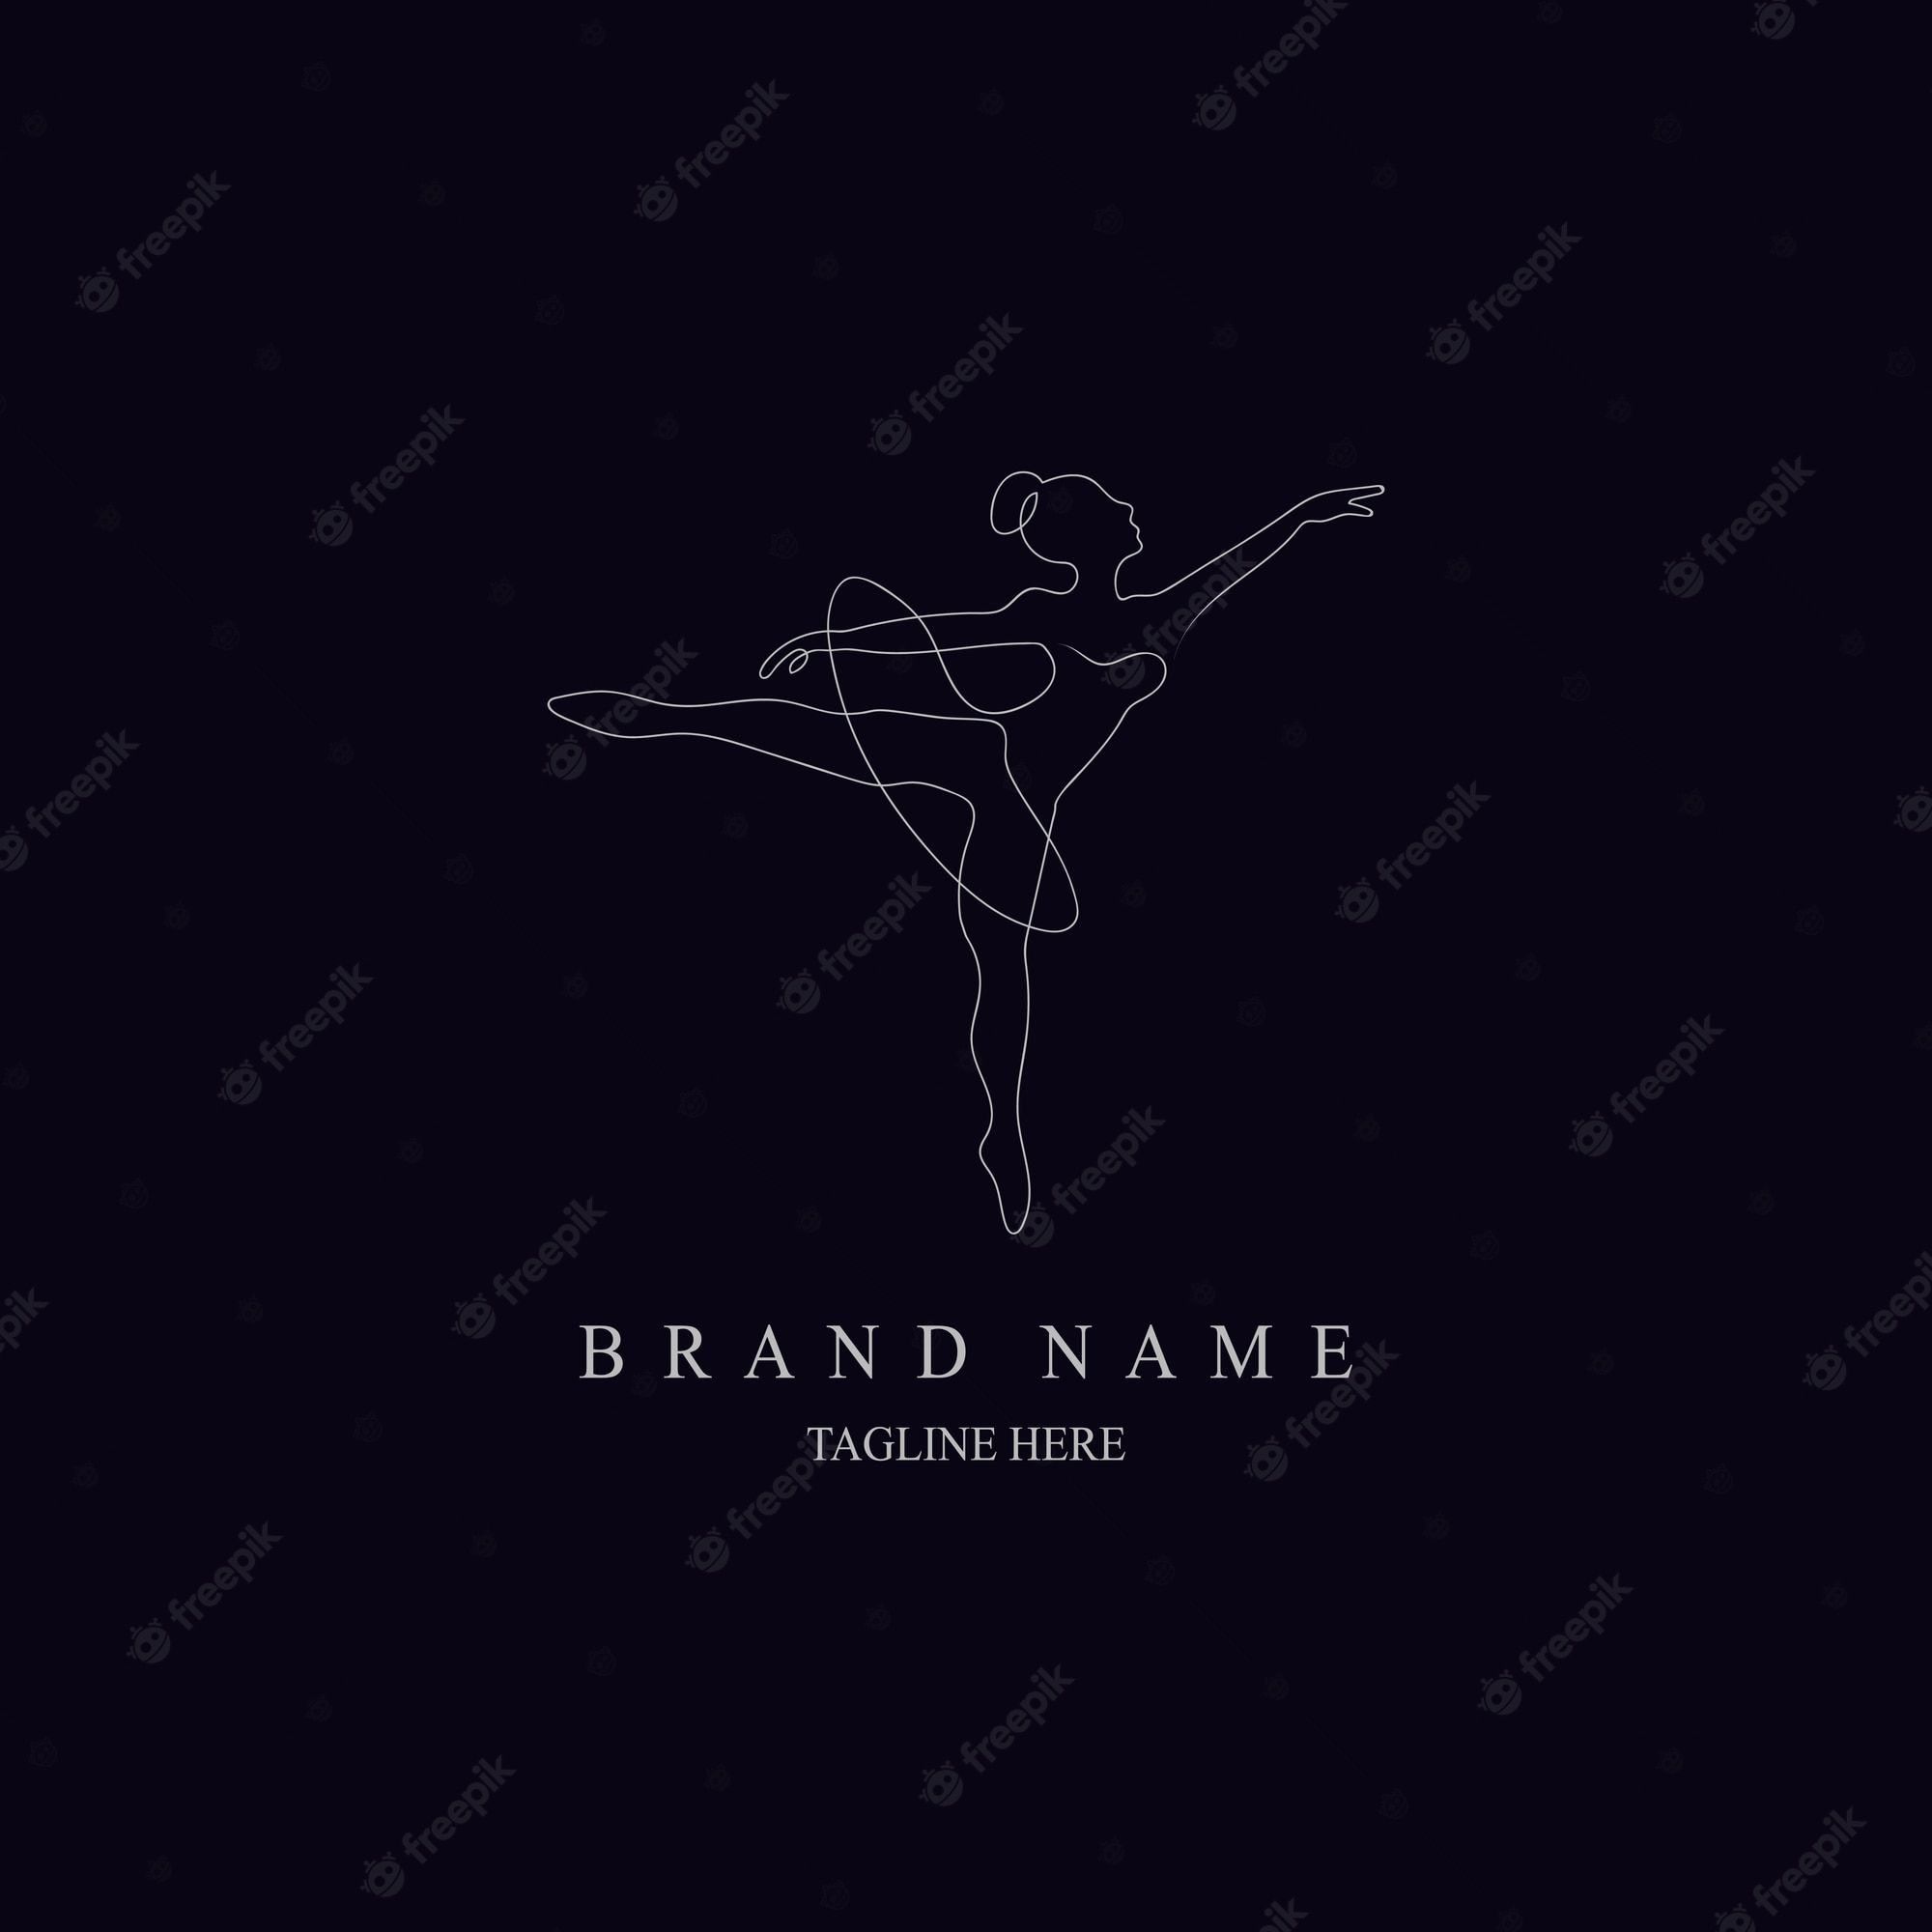 A ballet dancer logo template - Ballet, dance